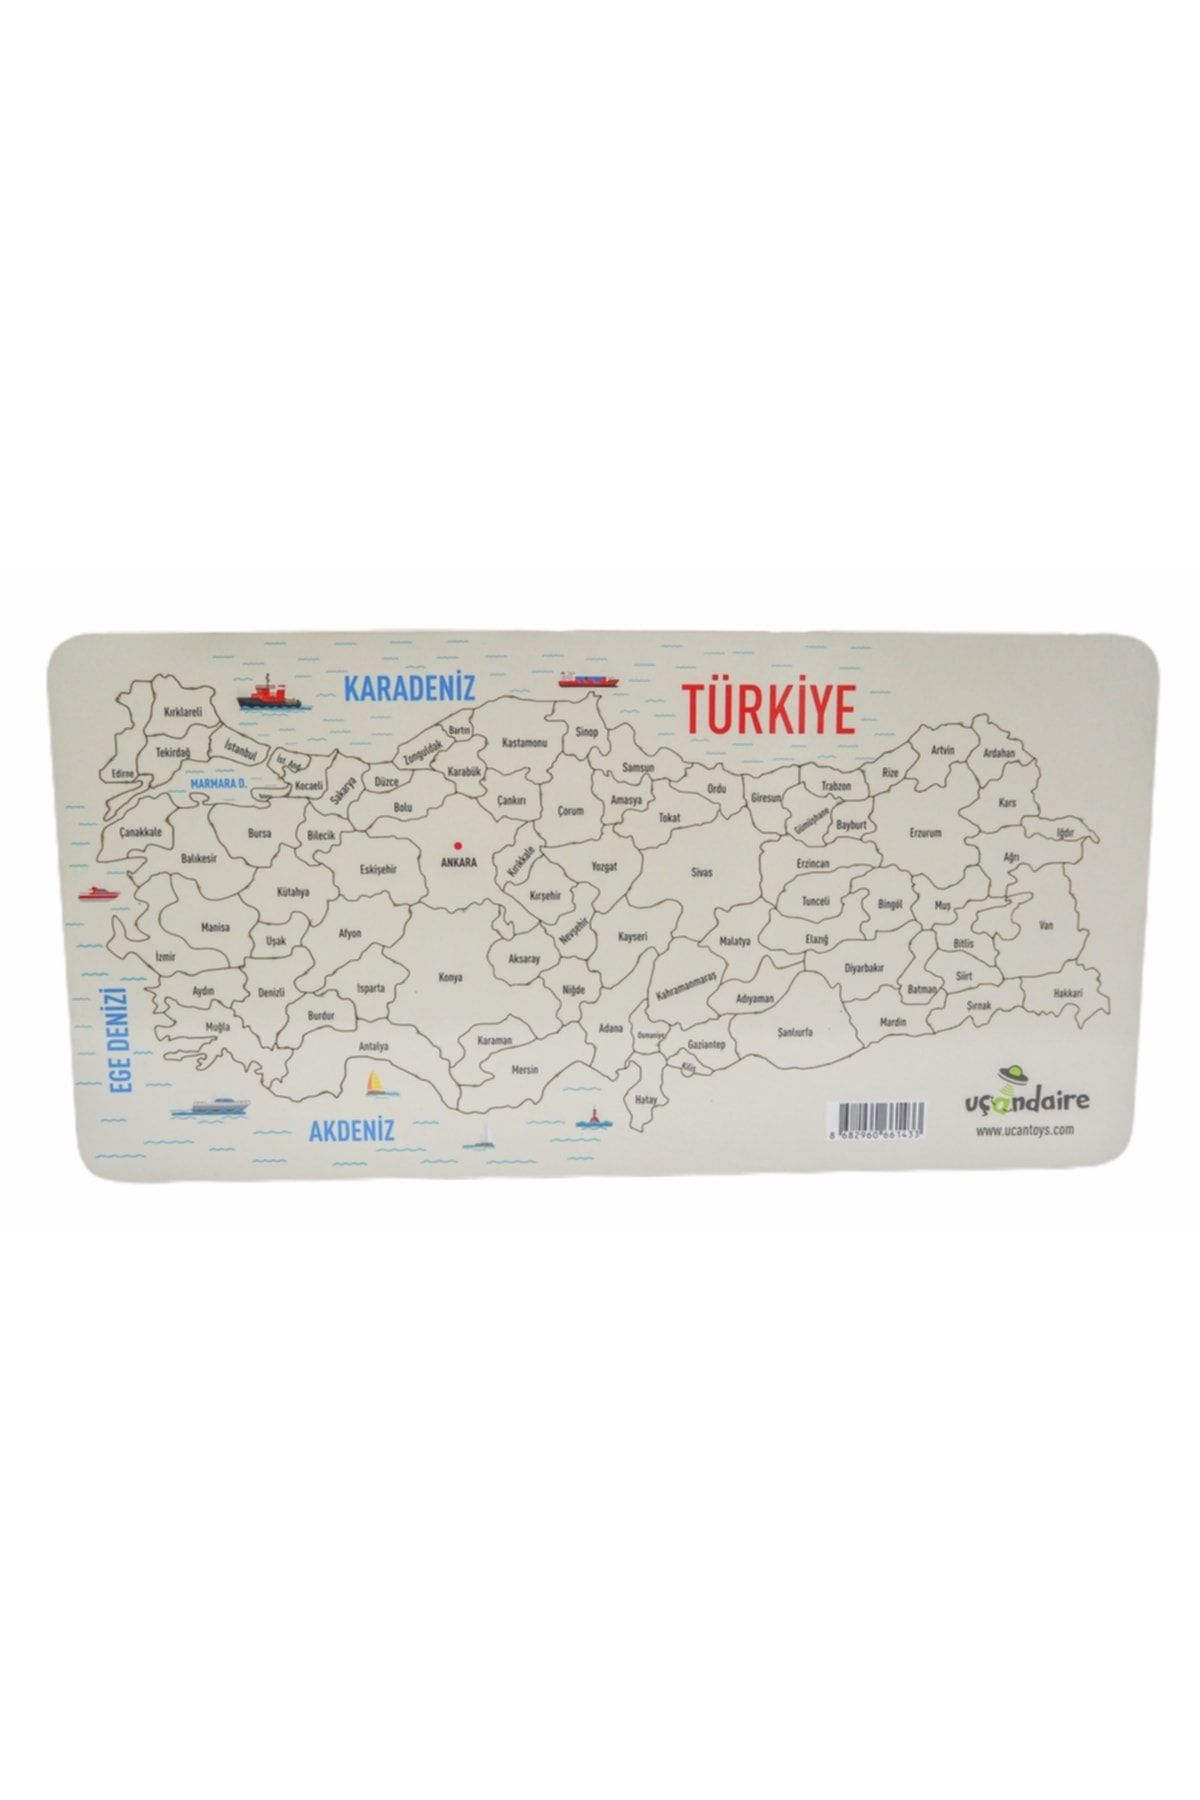 Uçandaire - Dev Ahşap Türkiye Haritası 41x22cm - Illere Göre Kesilmiş